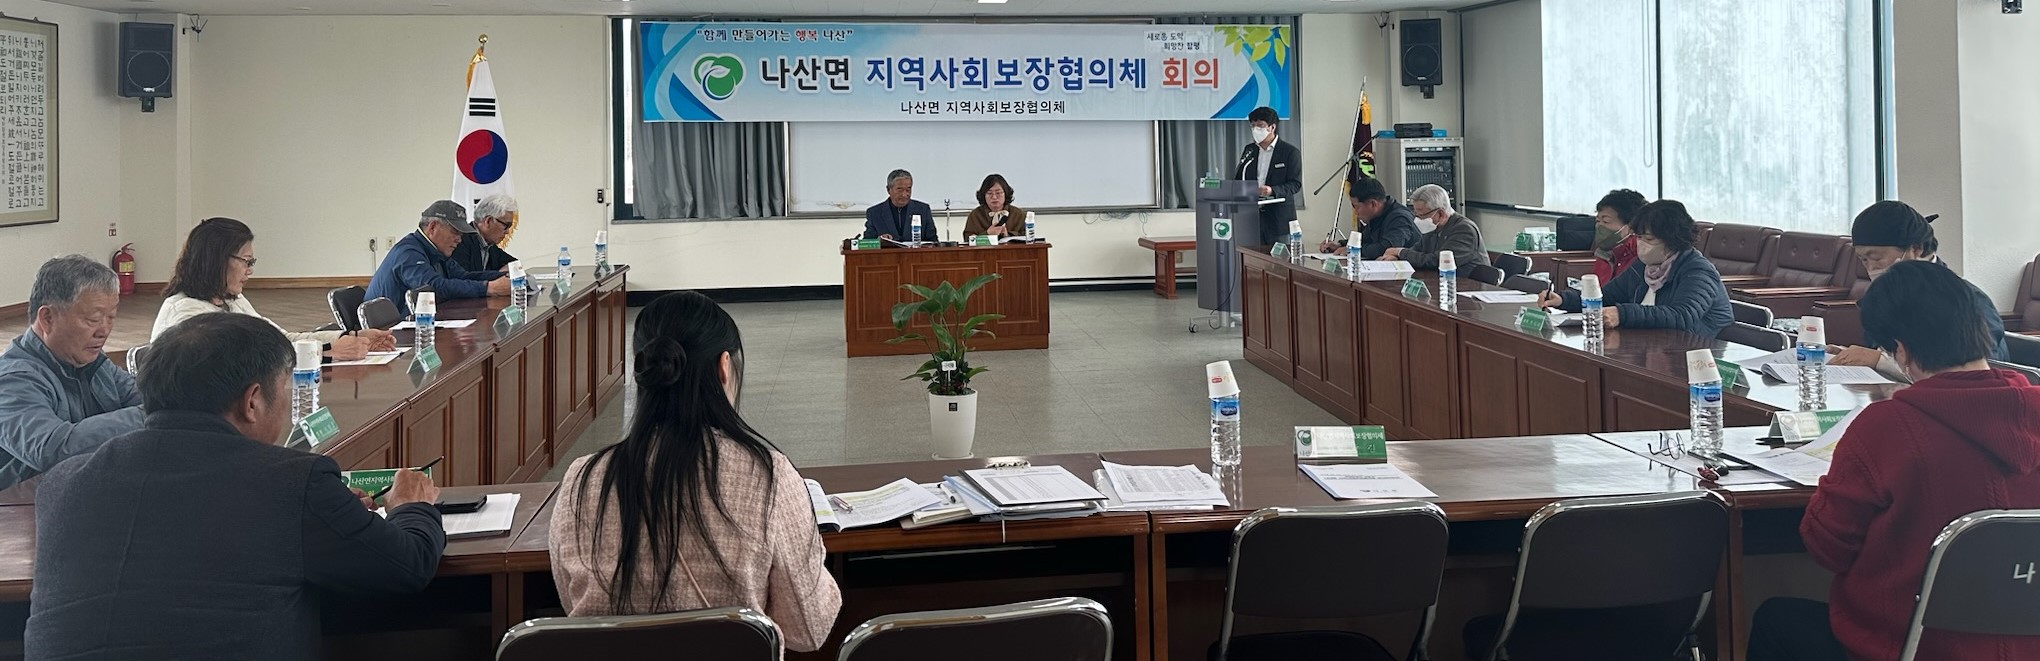 함평 나산면 지역사회보장협의체, 2분기 정기회의 개최